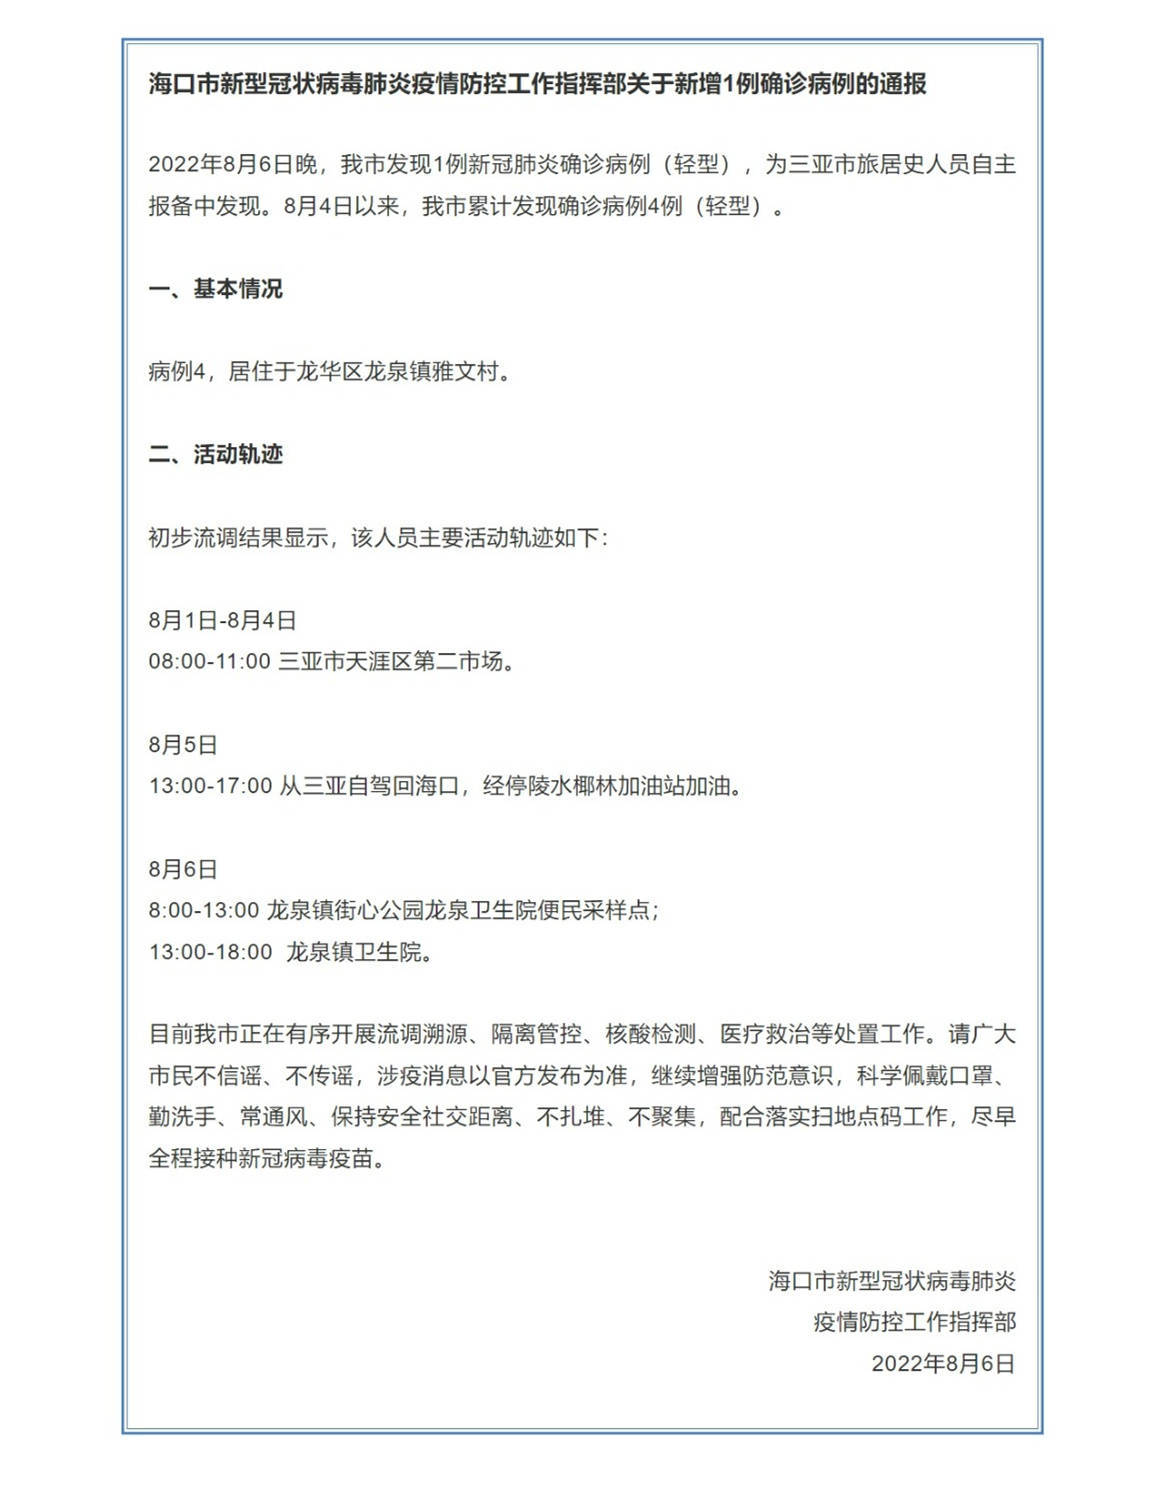 8月6日晚海南省海口市新增1例新冠肺炎确诊病例（轻型）